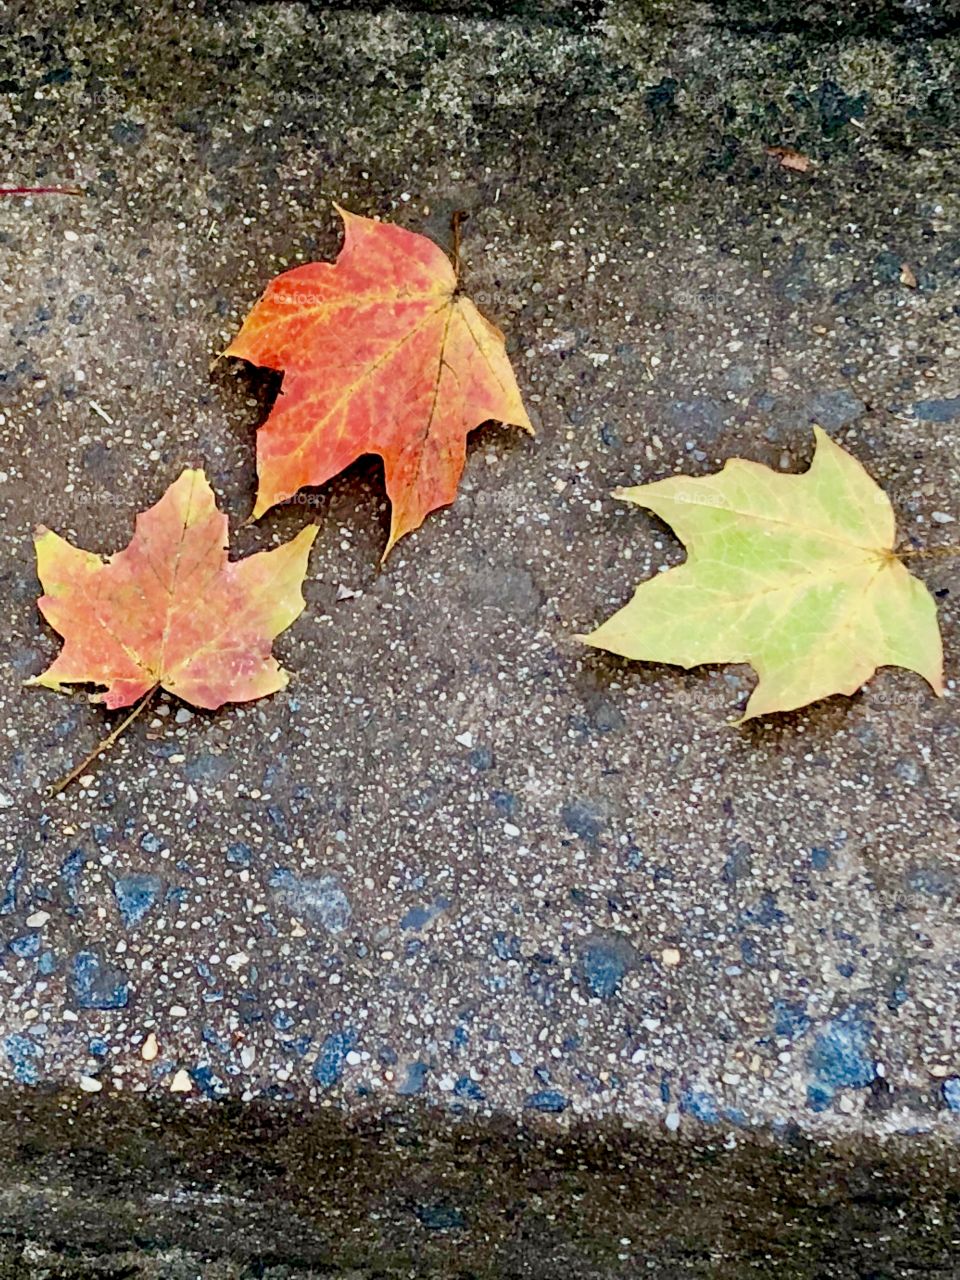 Three autumn leaves